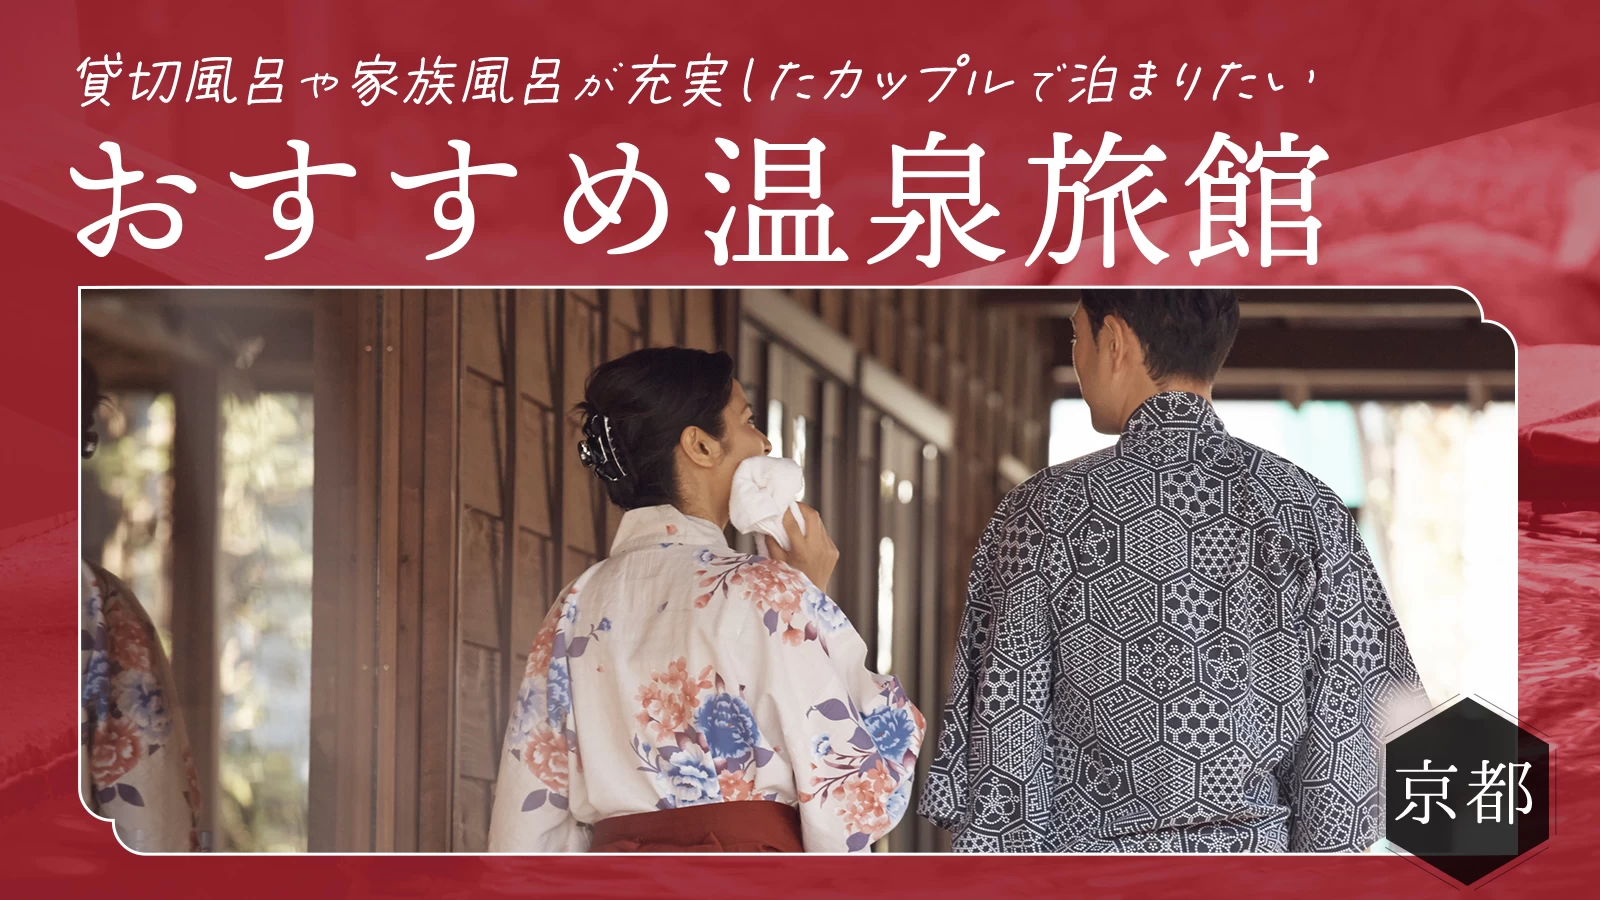 【京都】貸切風呂や家族風呂が充実したカップルで泊まりたいおすすめ温泉旅館10選